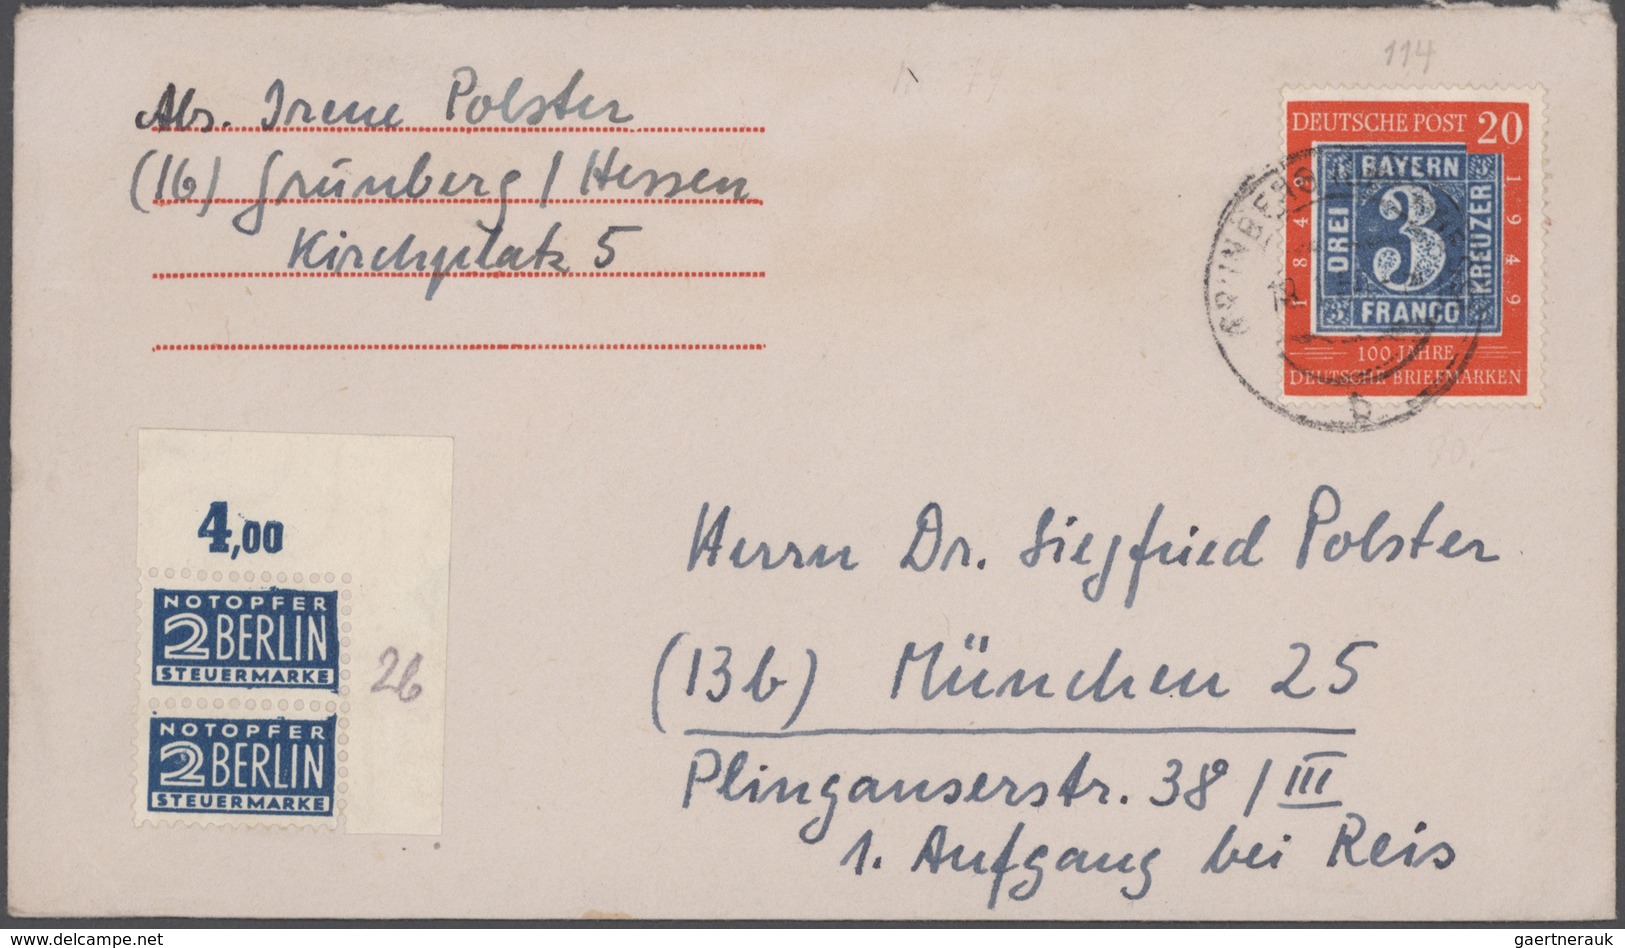 Bundesrepublik Deutschland: 1949/2008, vielseitiger und ergiebiger Posten von ca. 620 Briefen und Ka